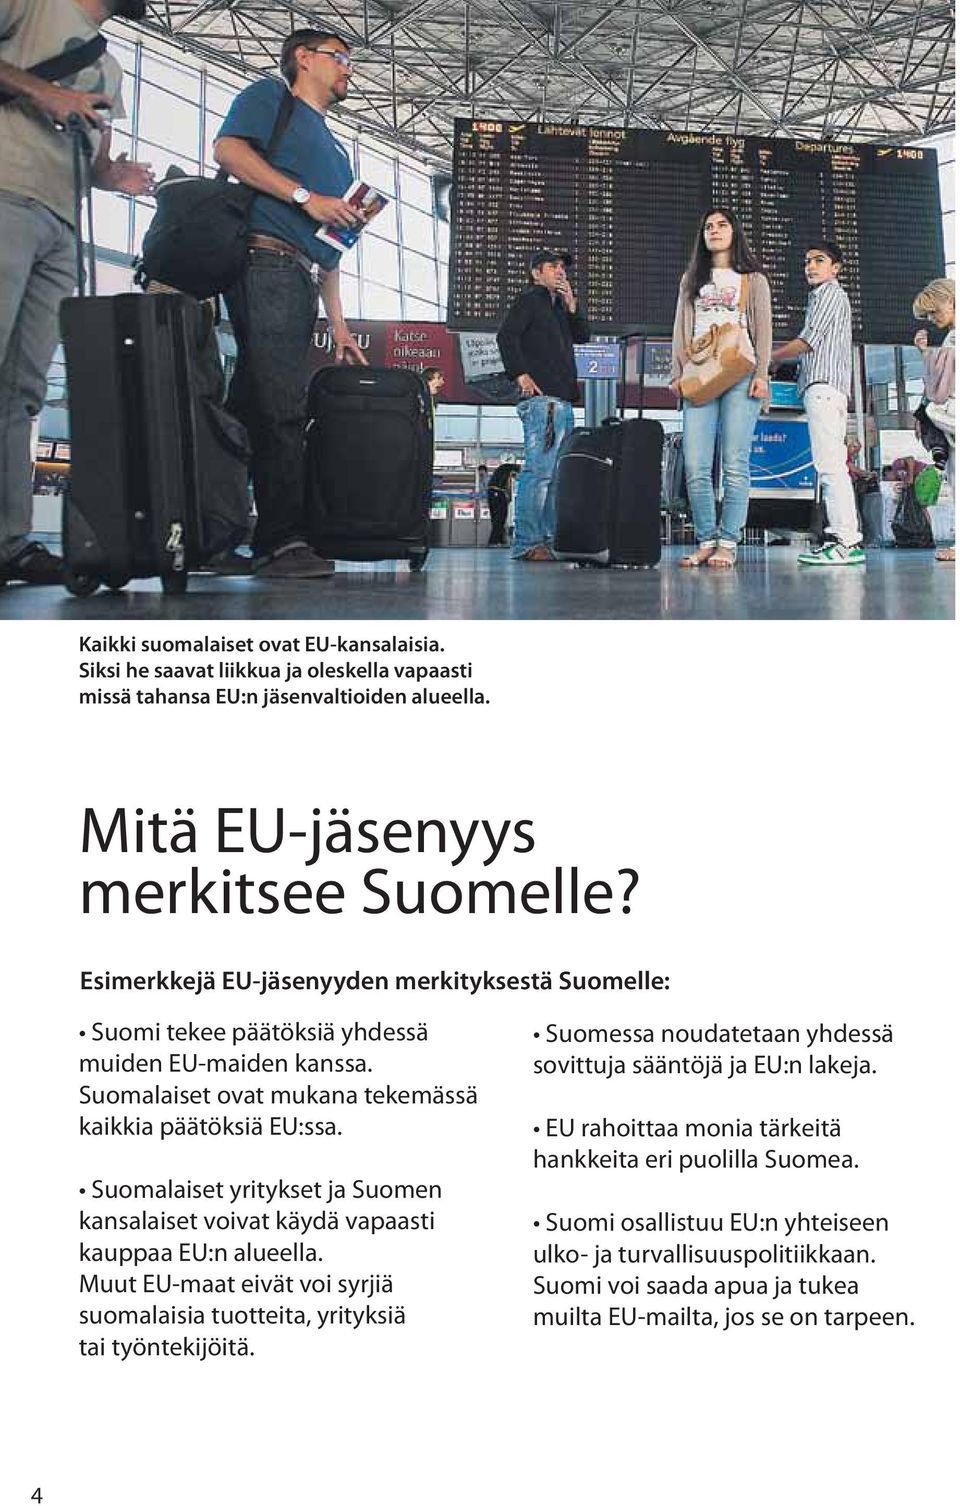 Suomalaiset yritykset ja Suomen kansalaiset voivat käydä vapaasti kauppaa EU:n alueella. Muut EU-maat eivät voi syrjiä suomalaisia tuotteita, yrityksiä tai työntekijöitä.